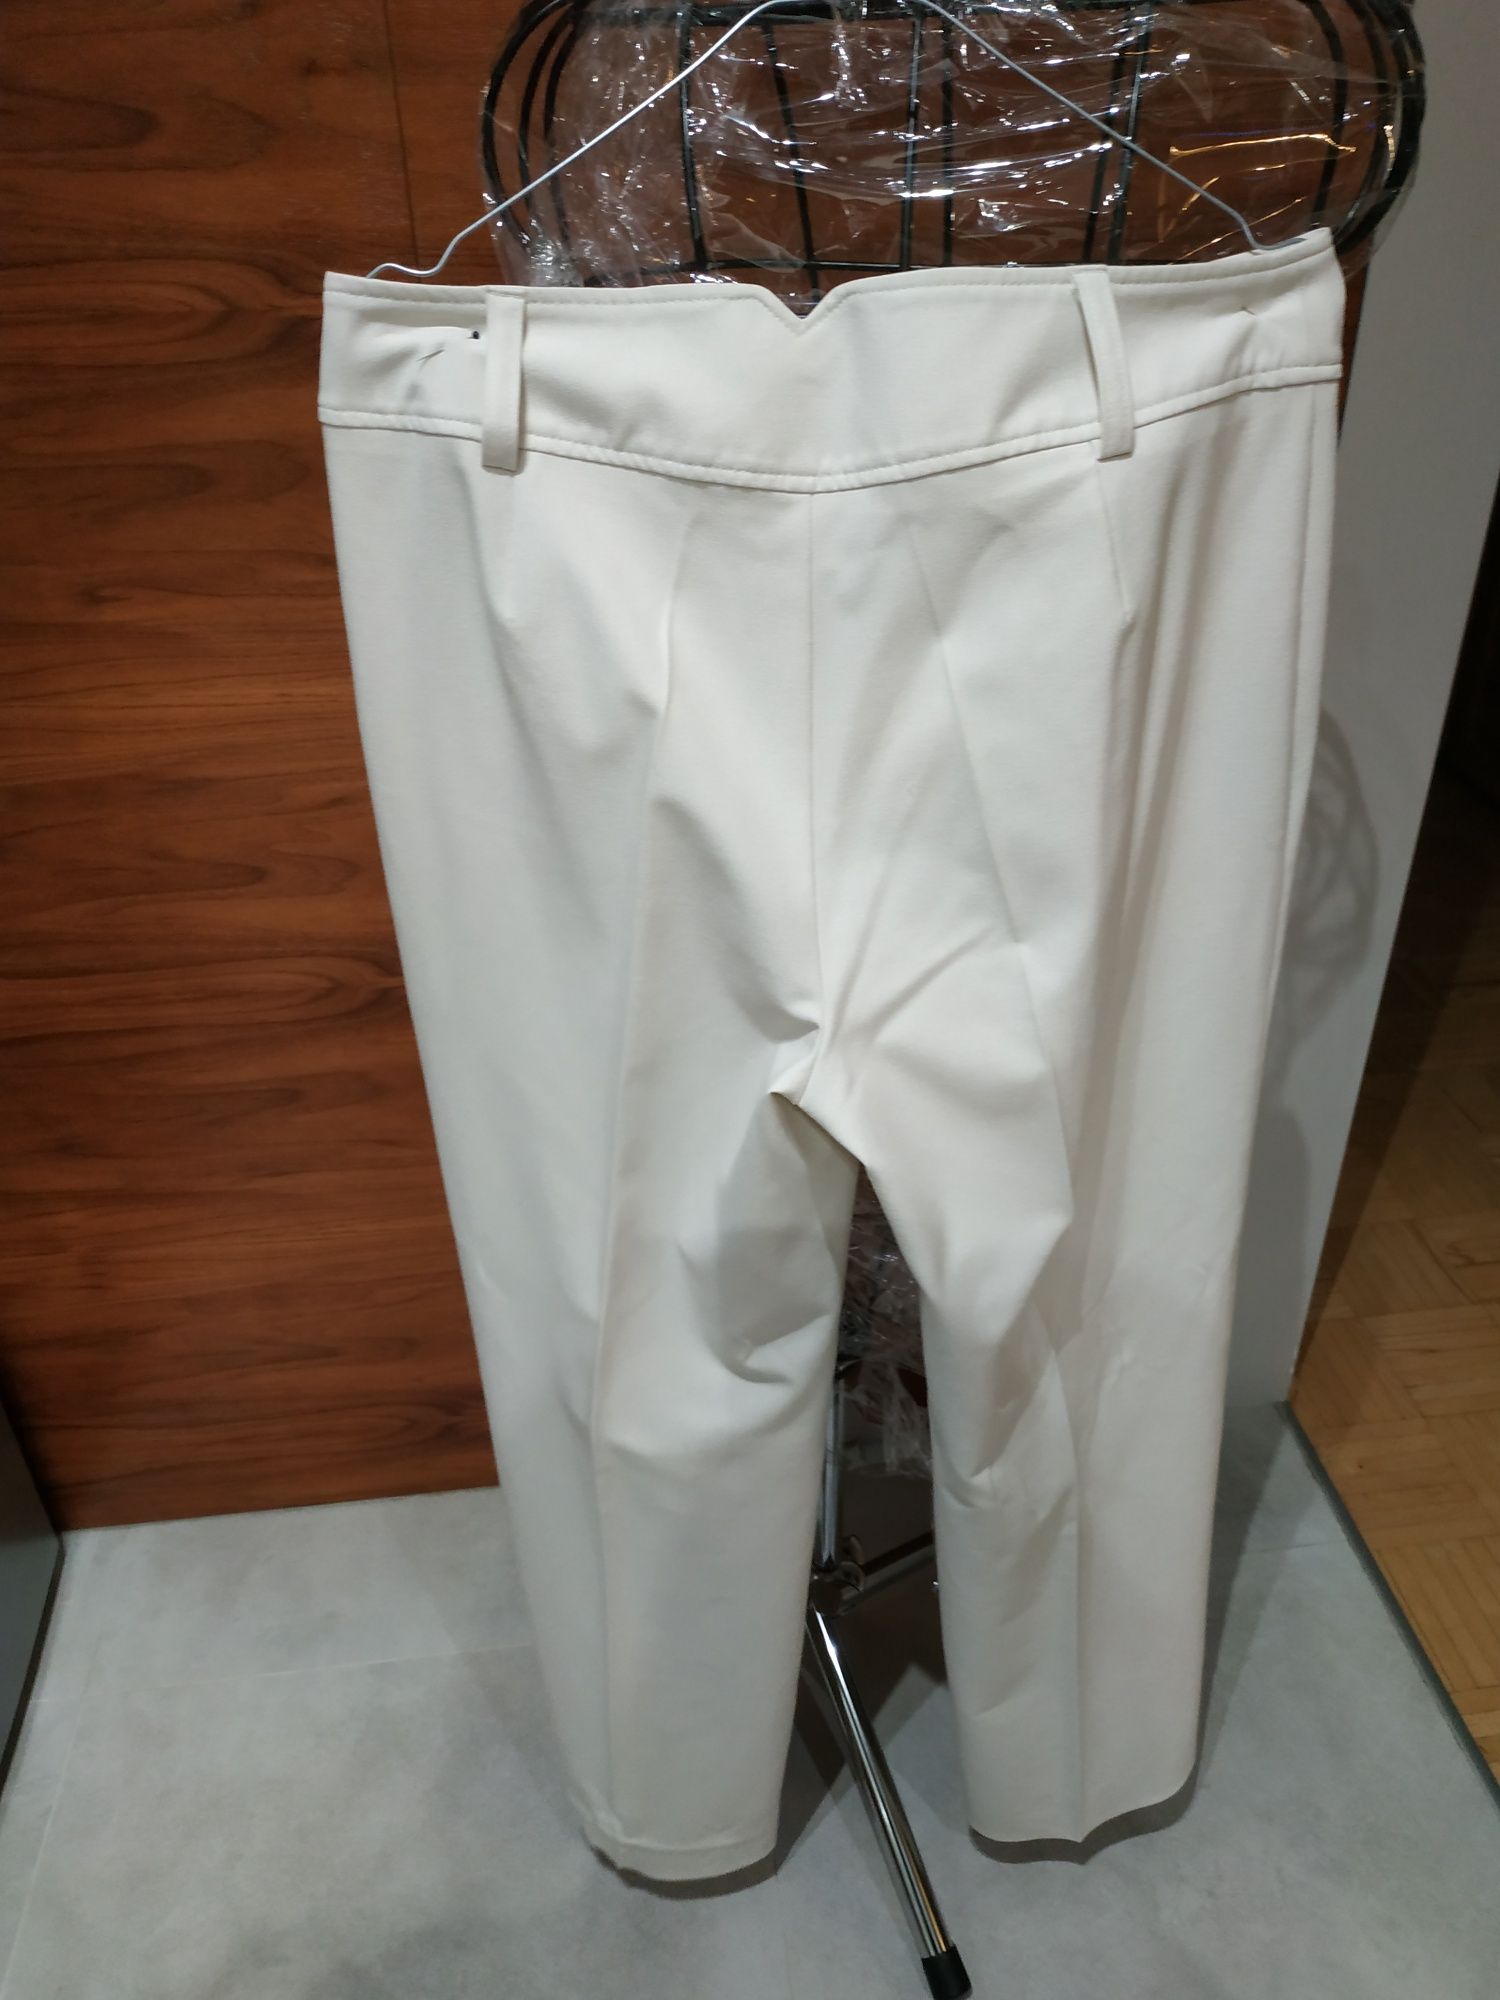 Damskie spodnie koloru kremowego KappAhl r. 42